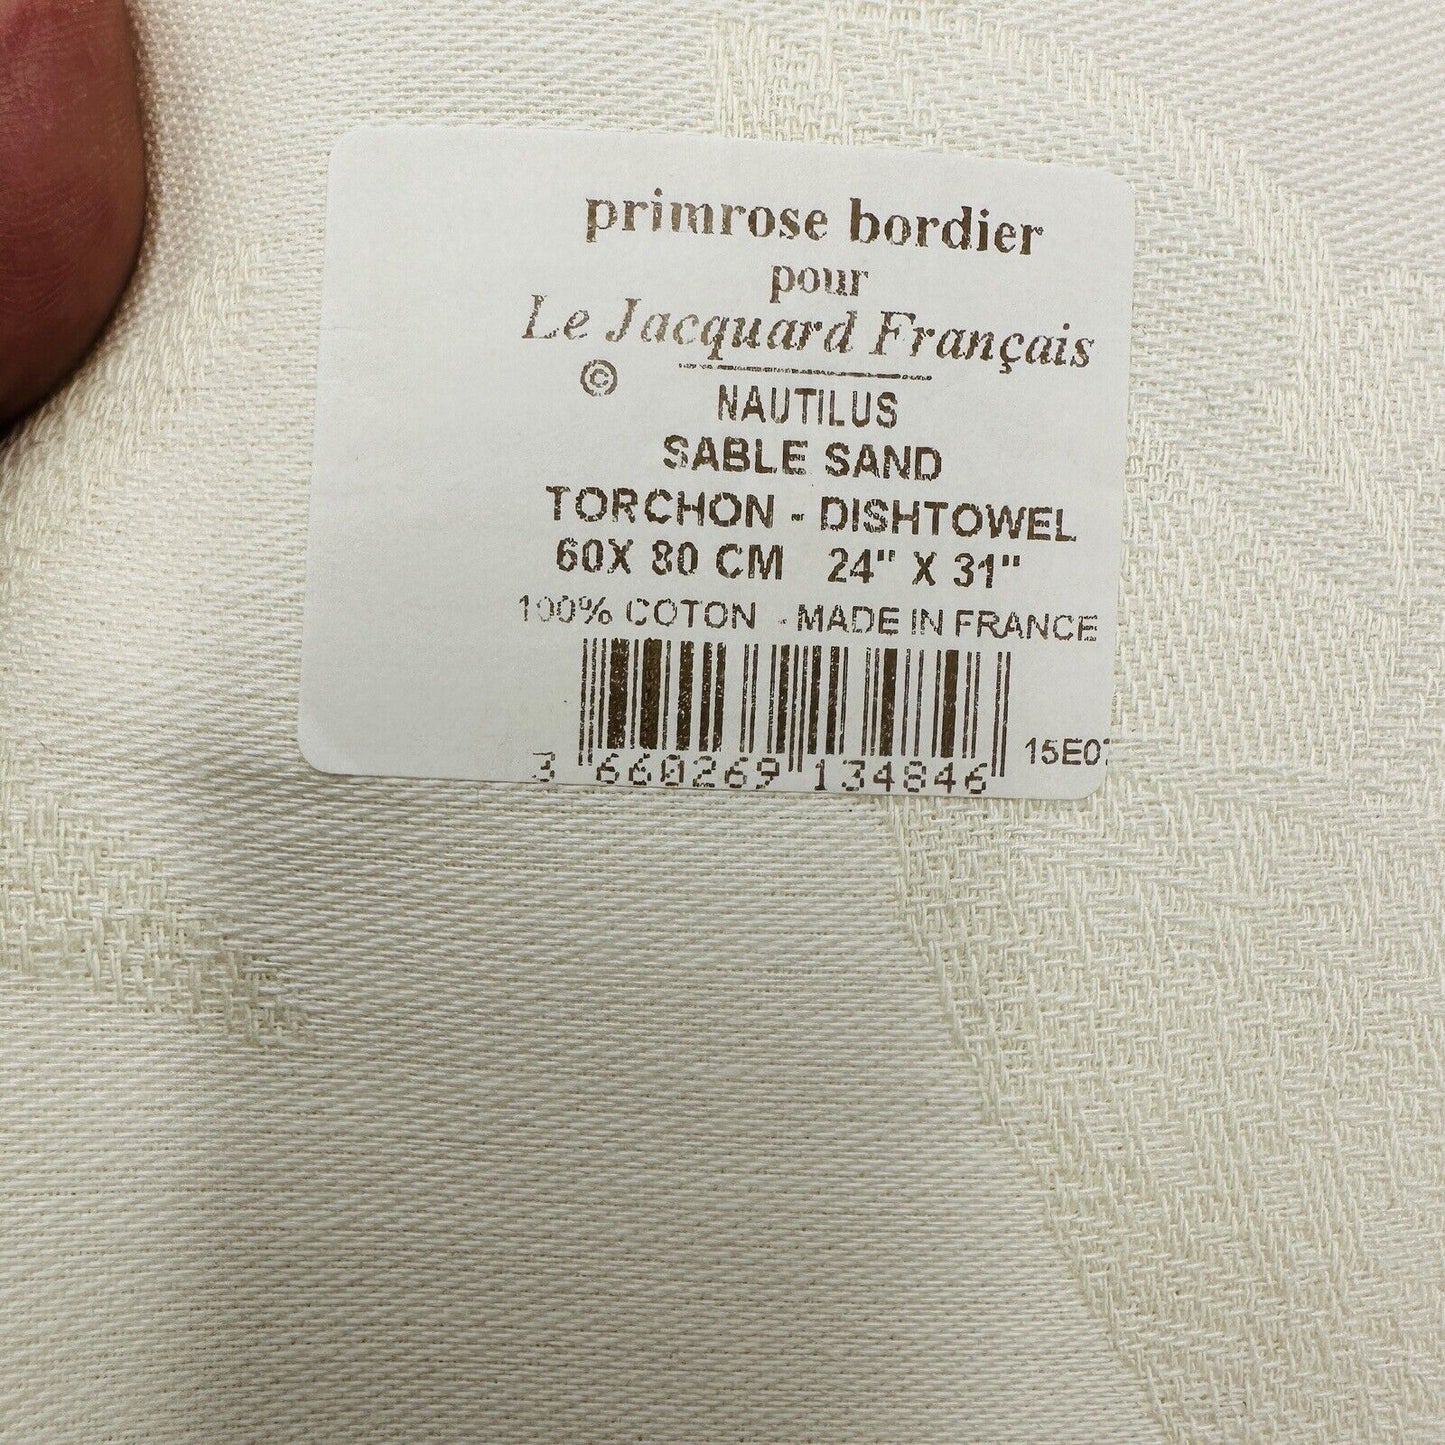 Primrose Bordier Nautilus Sable Sand Torchon Dishtowel  24" X 31” Cotton France